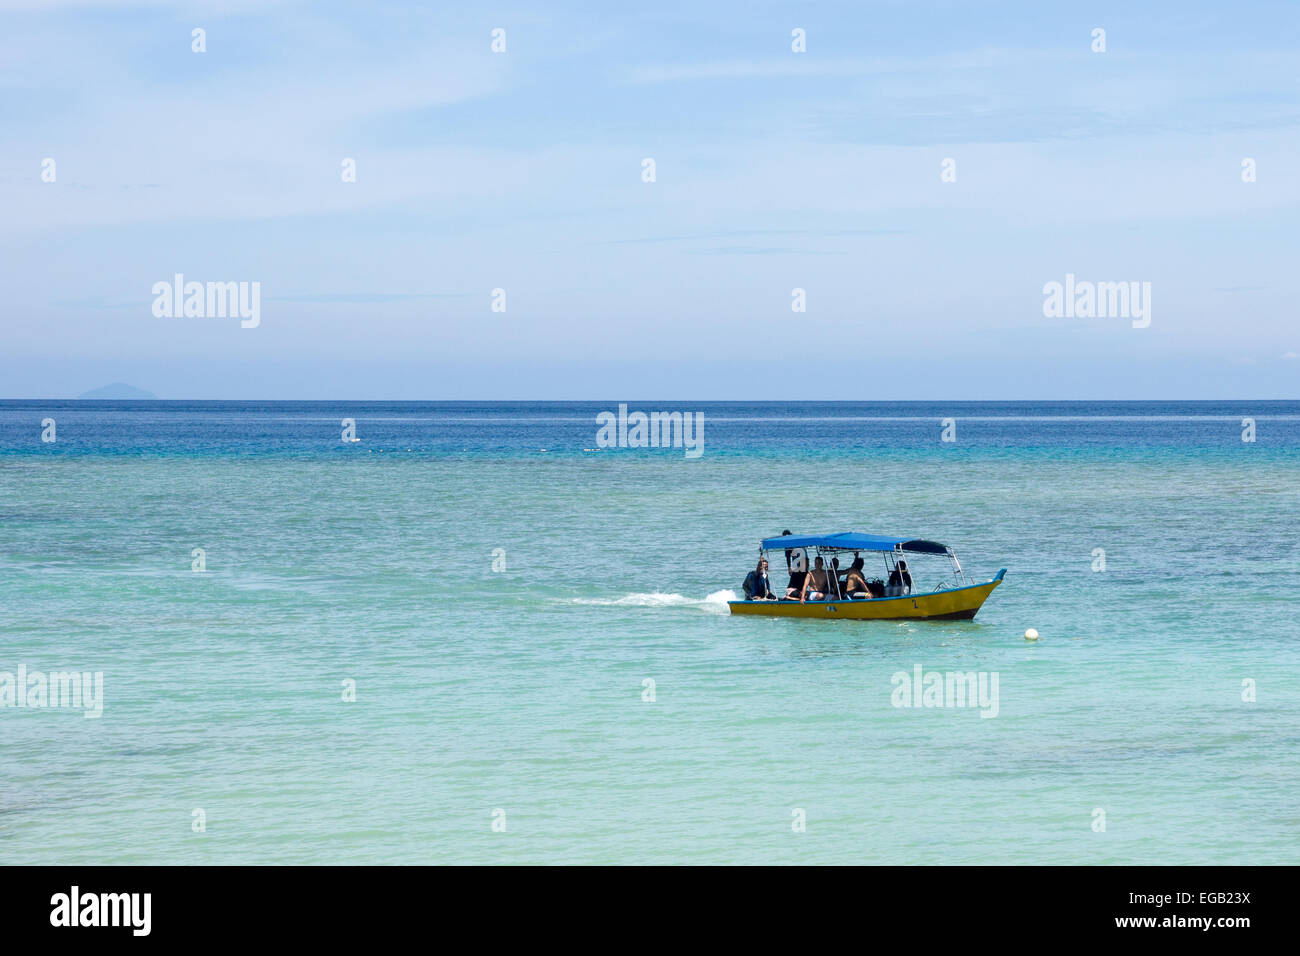 Barca usata per un scuba diving viaggio a Pulau perhentian, Malaysia Foto Stock